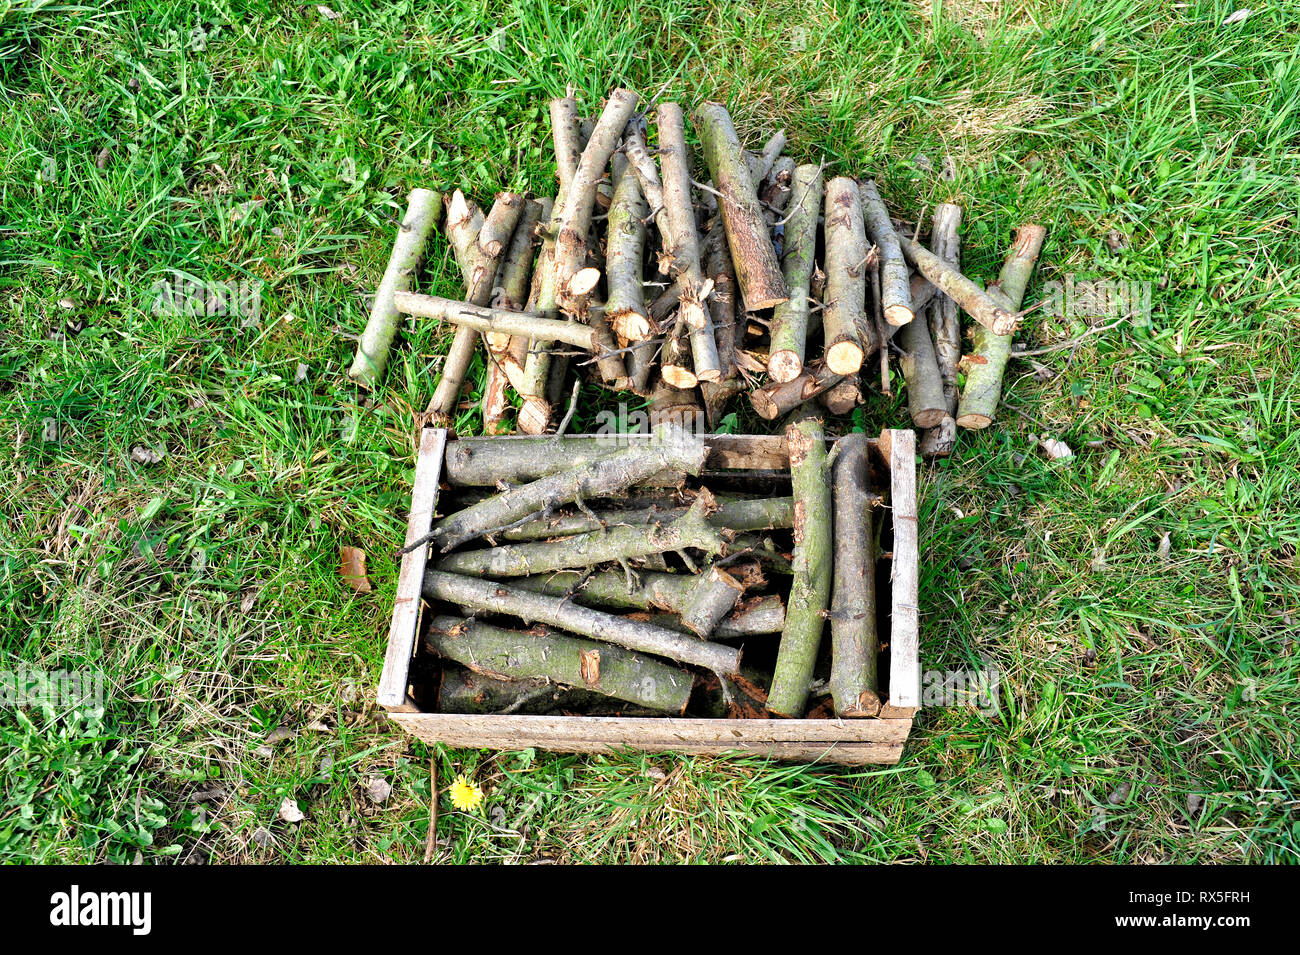 Zwei Brennholzstapel liegen auf einem gruenen Rasun. Der eine Stapel liegt in einer Holzkiste, Der andere direkt auf dem Rasen Foto Stock